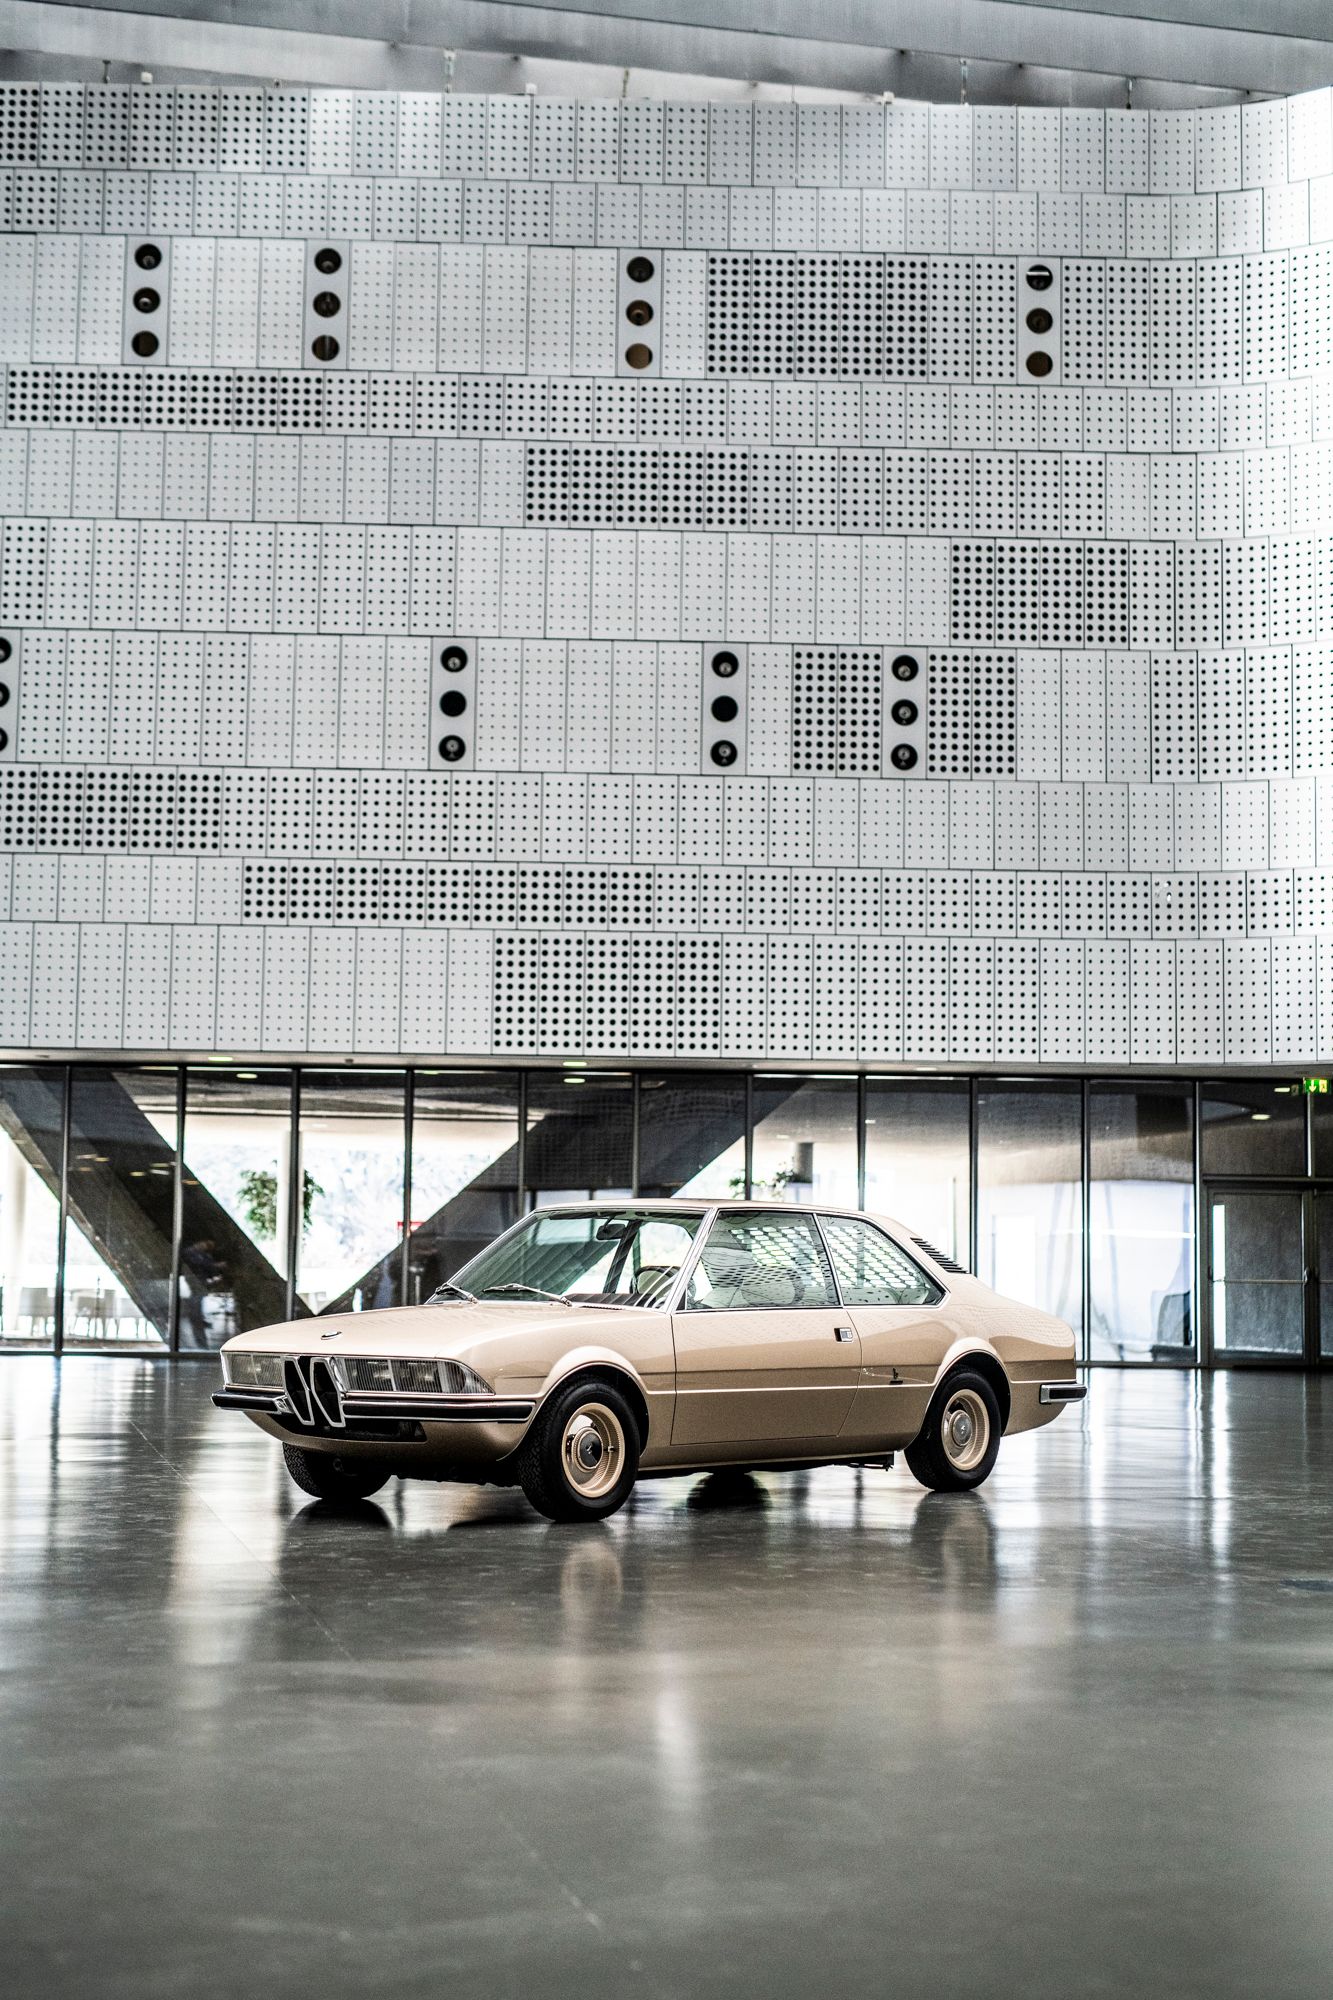 2019 BMW Garmisch